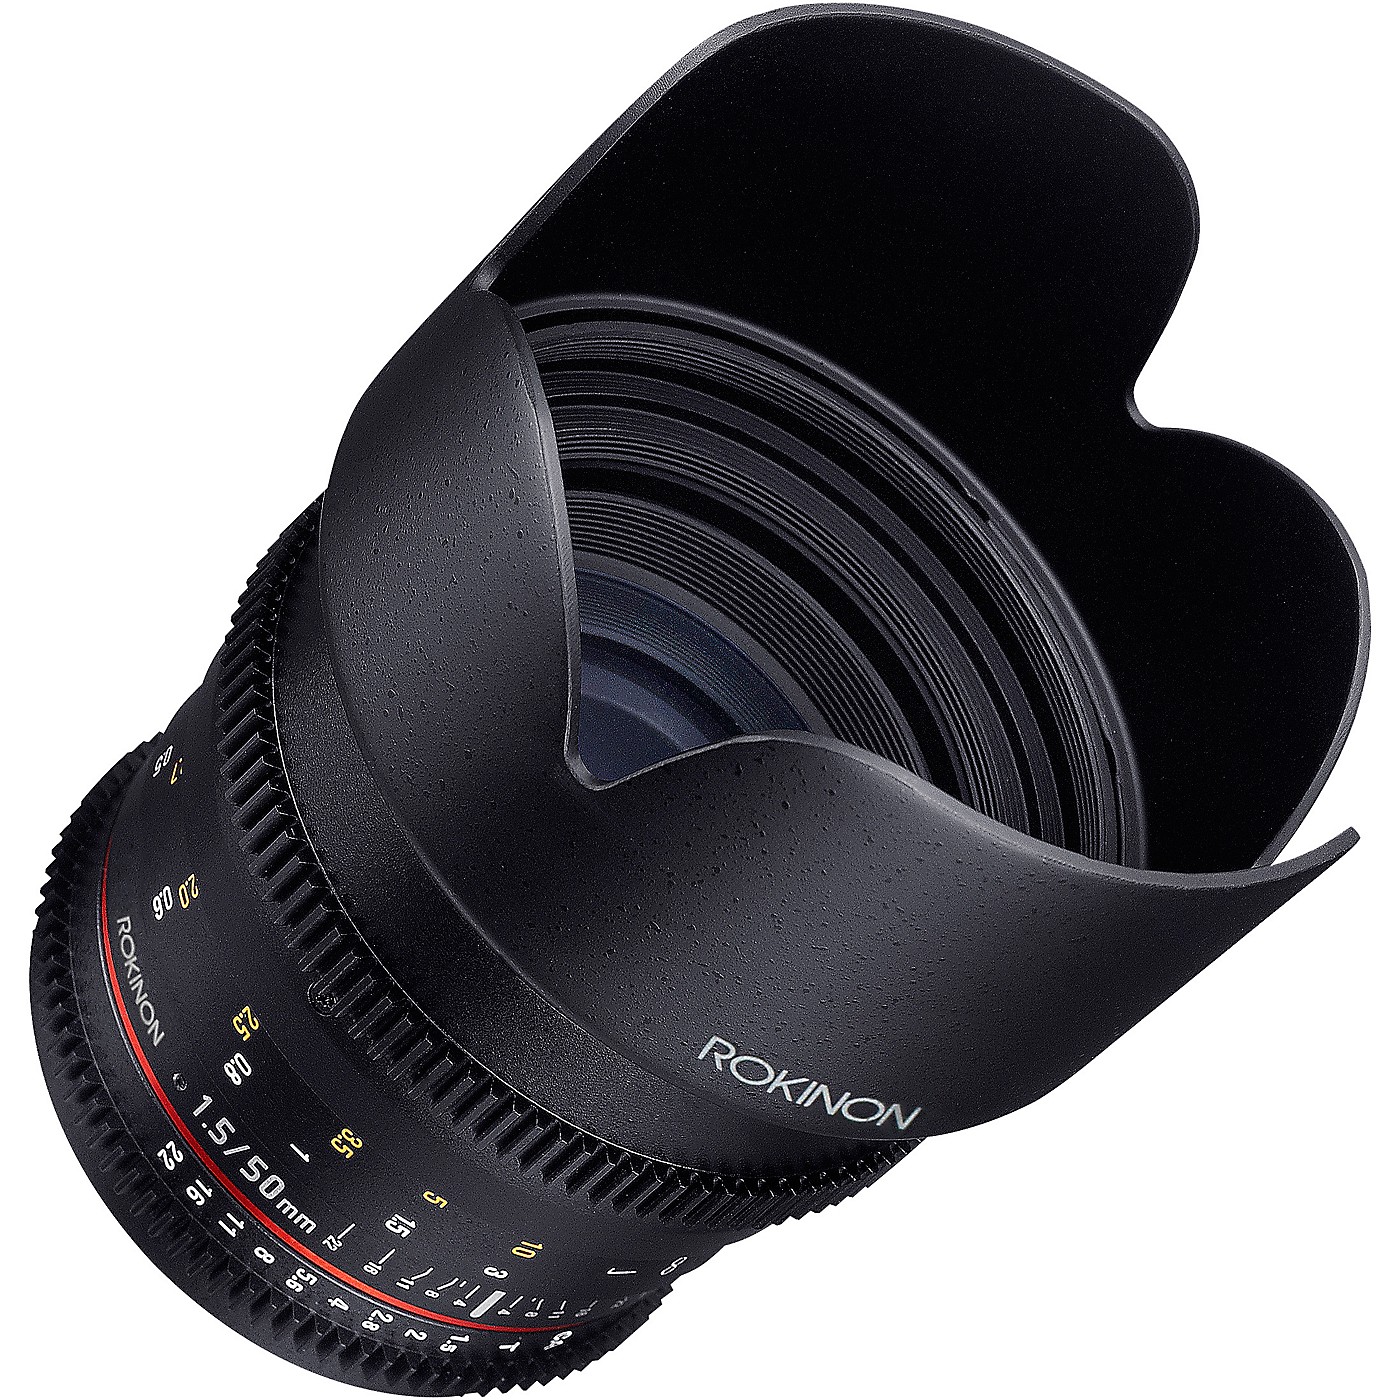 ROKINON Cine DS 50mm T1.5 Cine Lens for Sony E-Mount thumbnail